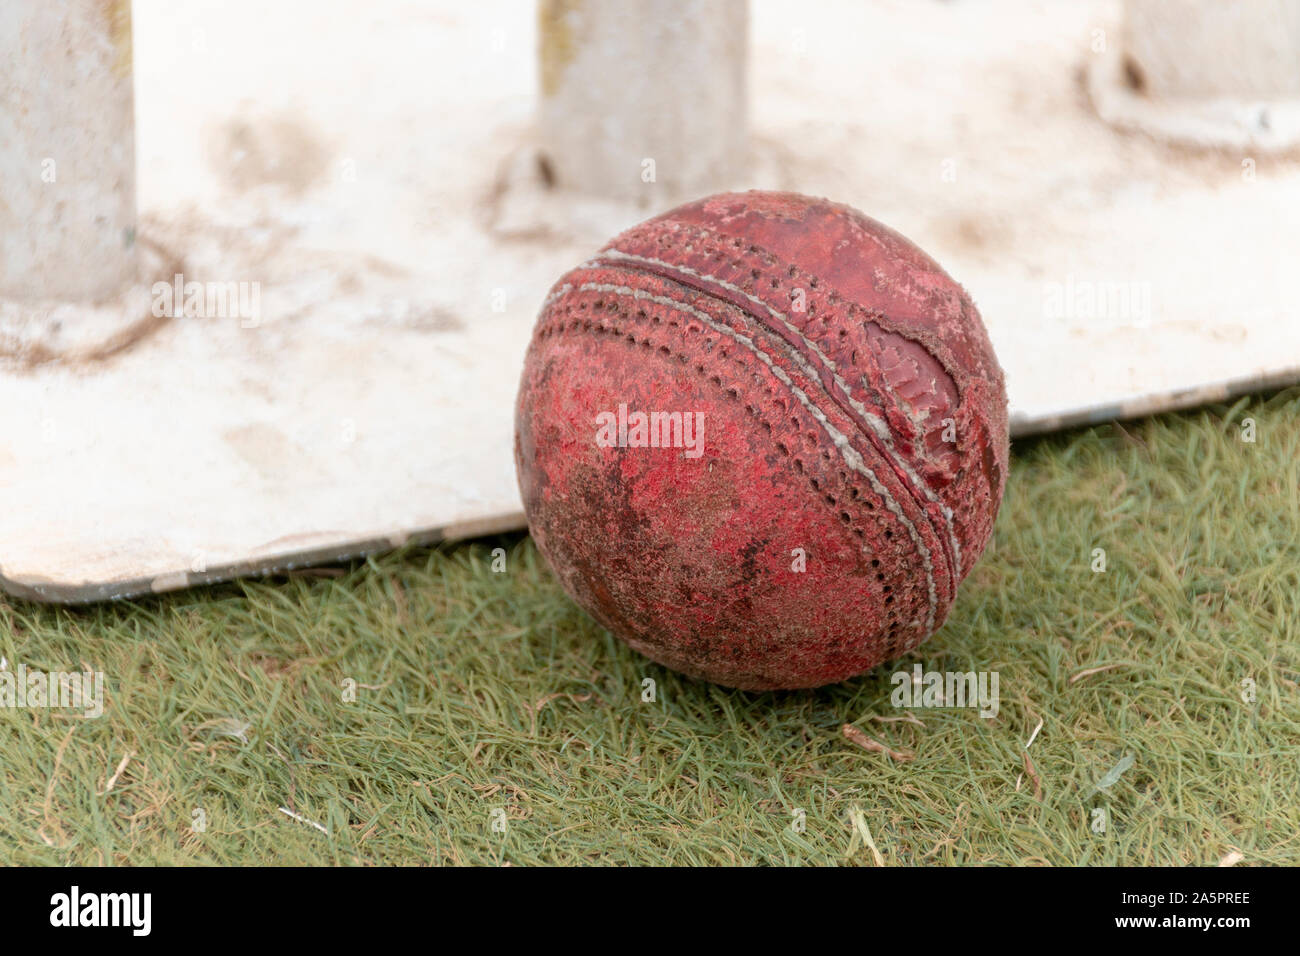 Una vista de cerca de un antiguo pozo usado red cricket pelota sobre un césped de hierba al lado de metal blanco wickets Foto de stock